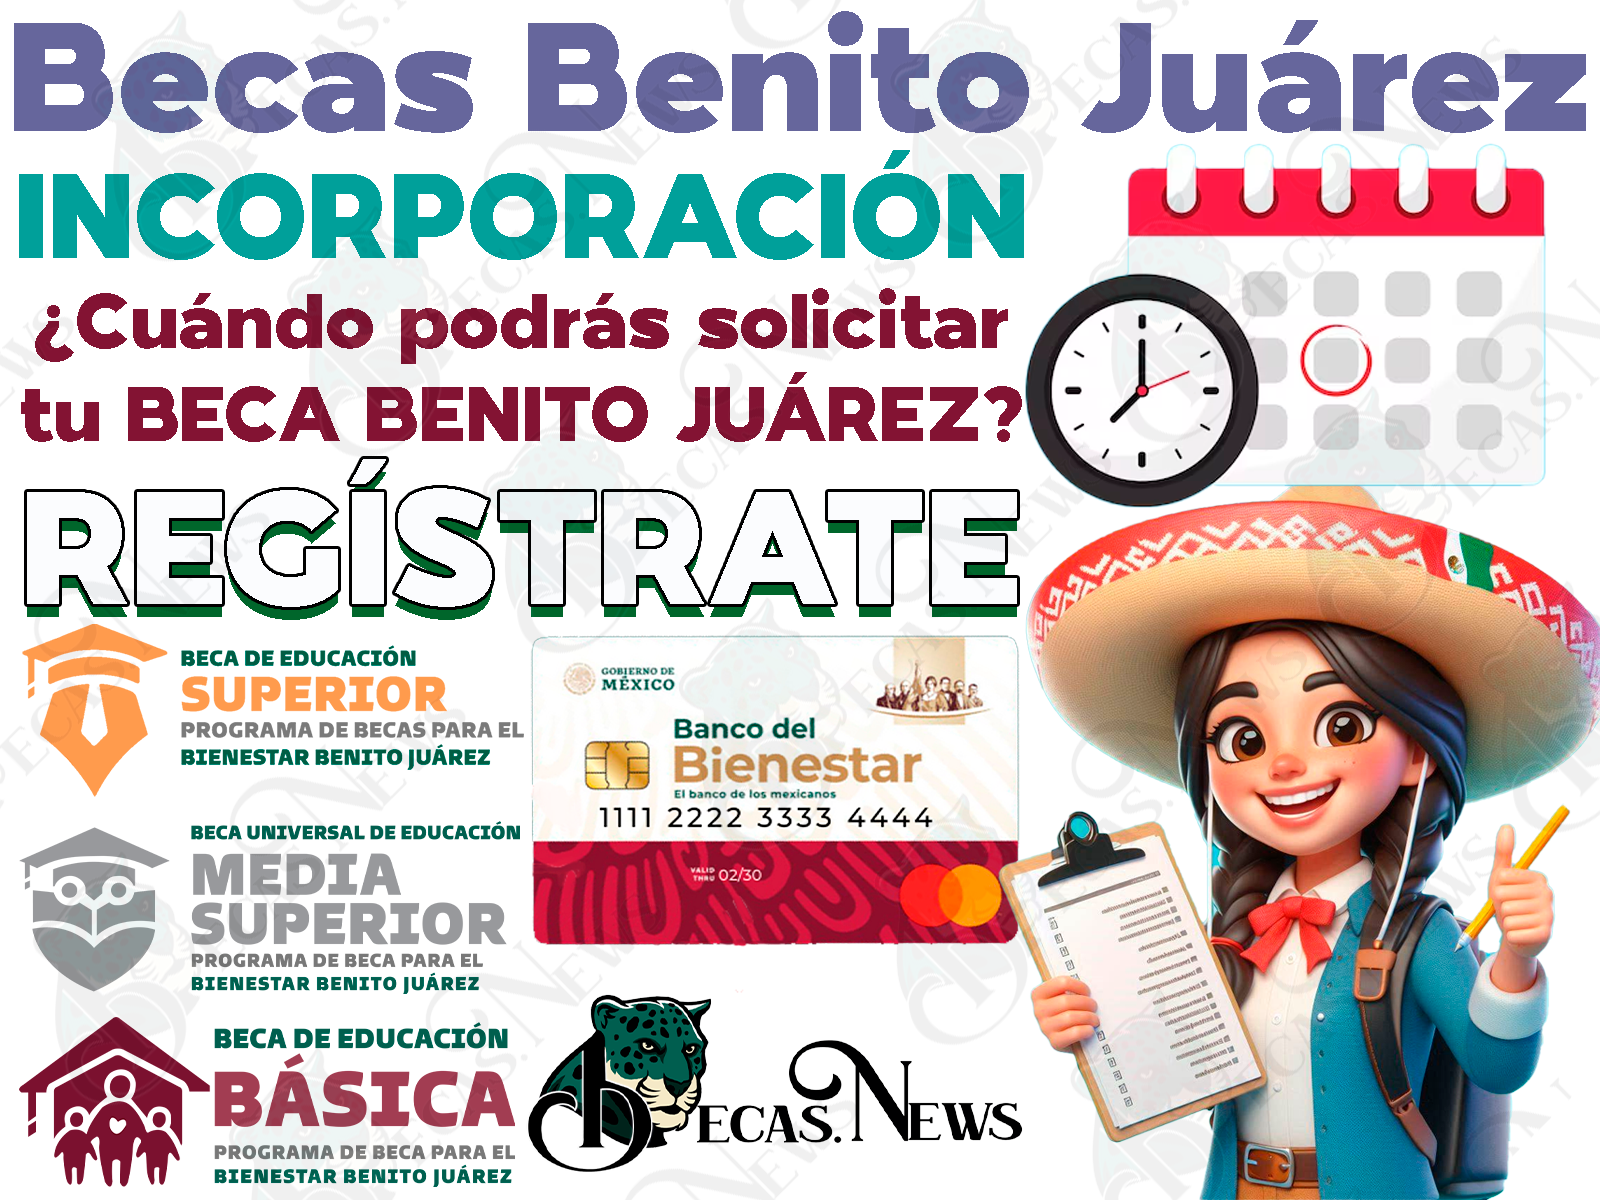 Próximas INCORPORACIONES al programa de Becas para el Bienestar Benito Juárez, ¿Cuándo podrás solicitar tu beca?